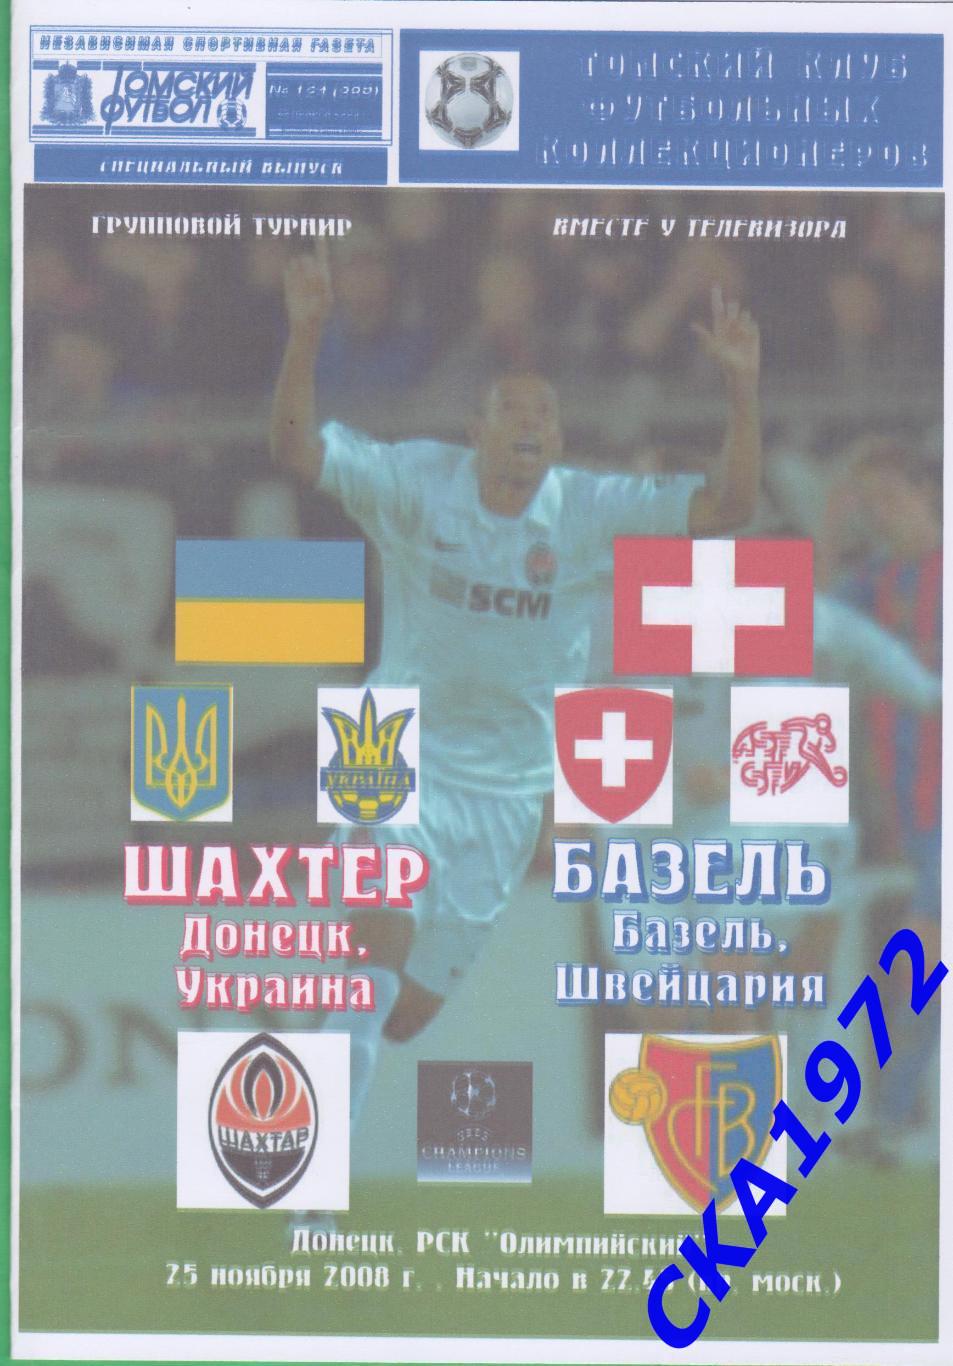 программа Шахтер Донецк Украина - Базель Швейцария 2008 Лига чемпионов